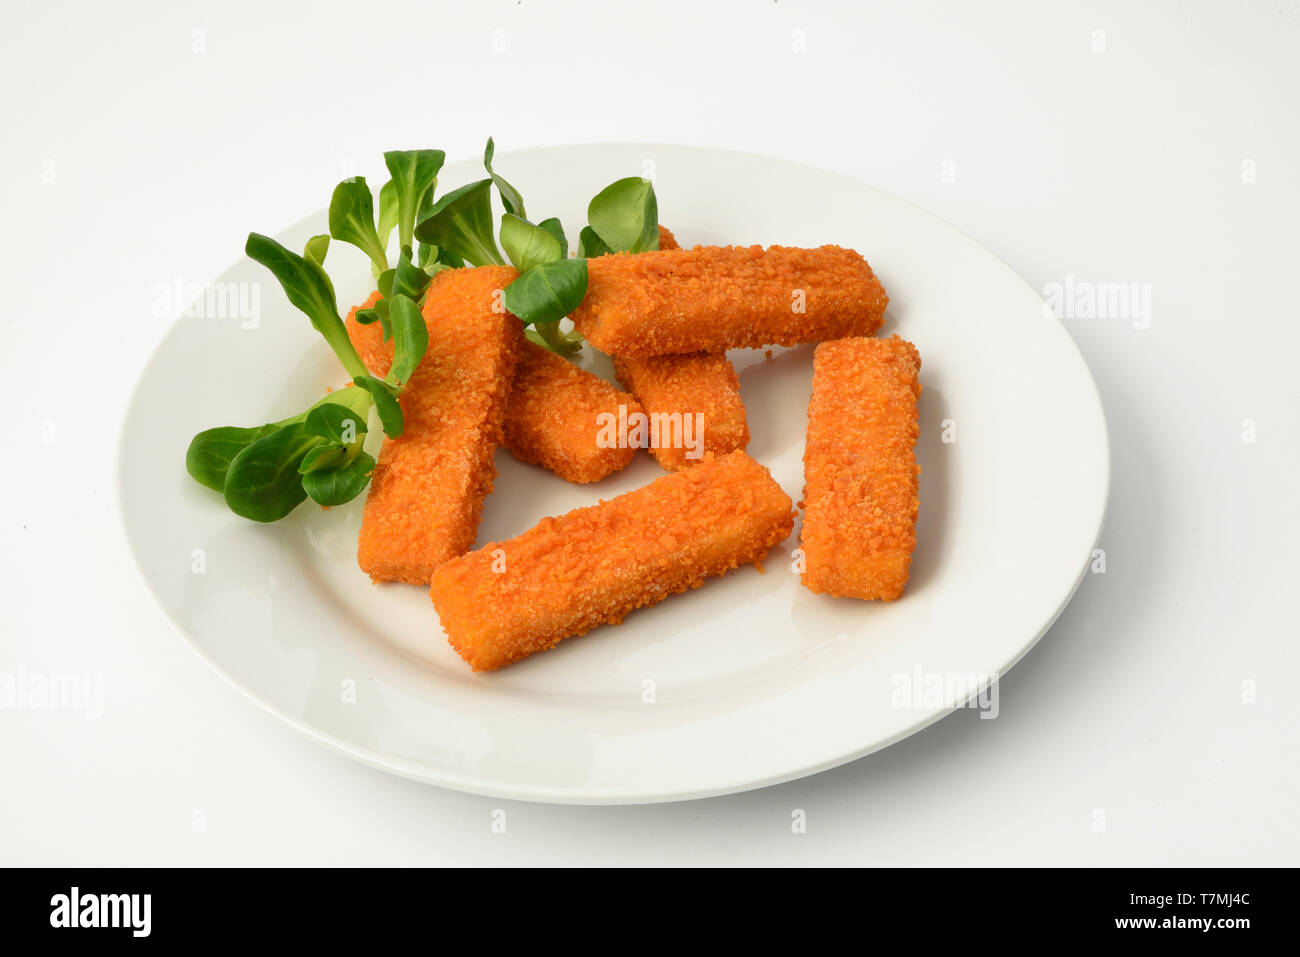 Les bâtonnets de poisson, les bâtonnets de poisson sur une assiette blanche, décorée avec une salade de maïs. Studio photo sur un fond blanc. Banque D'Images